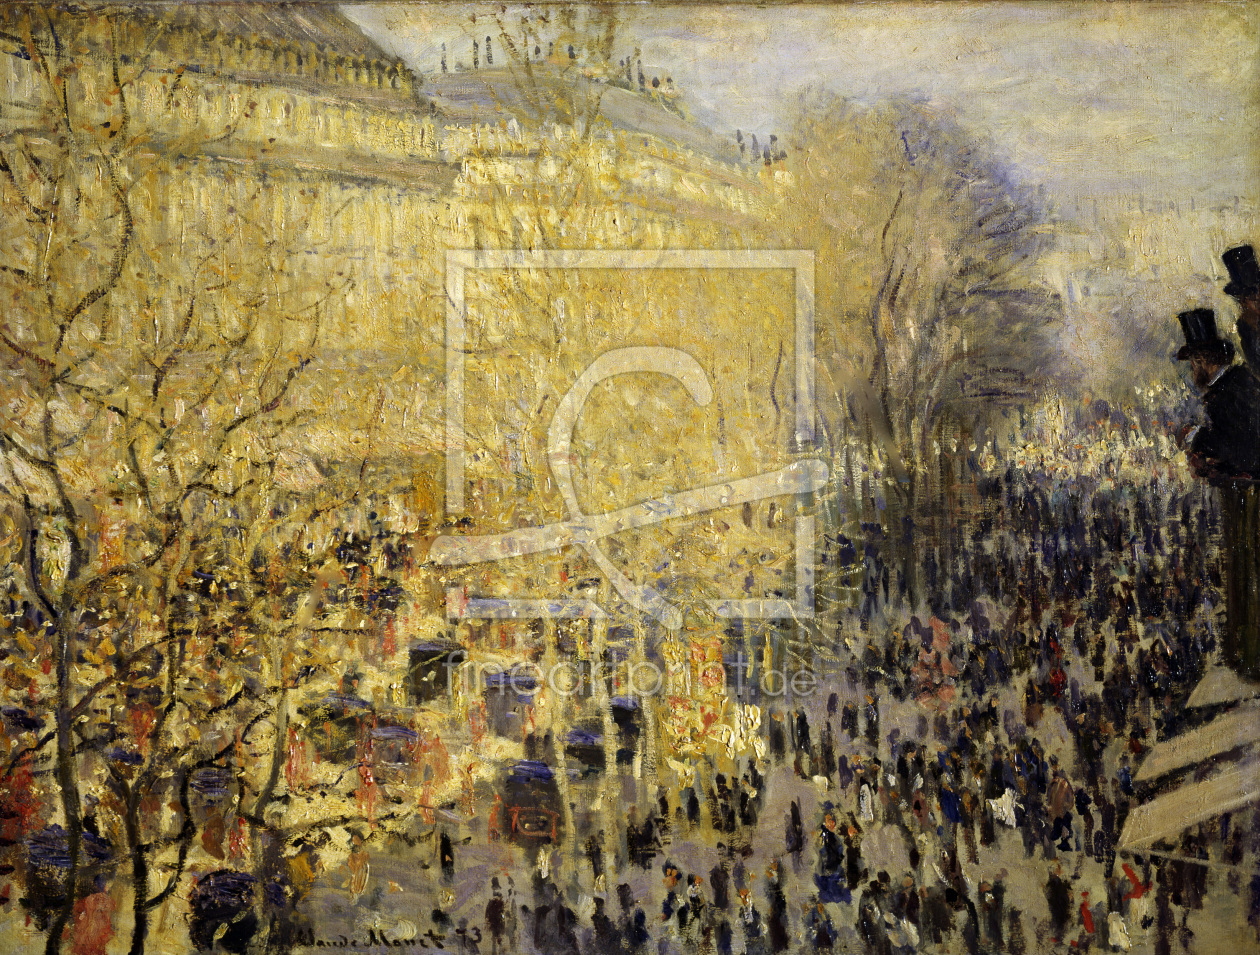 Bild-Nr.: 30004248 Monet / Boulevard des Capucines / 1873 erstellt von Monet, Claude